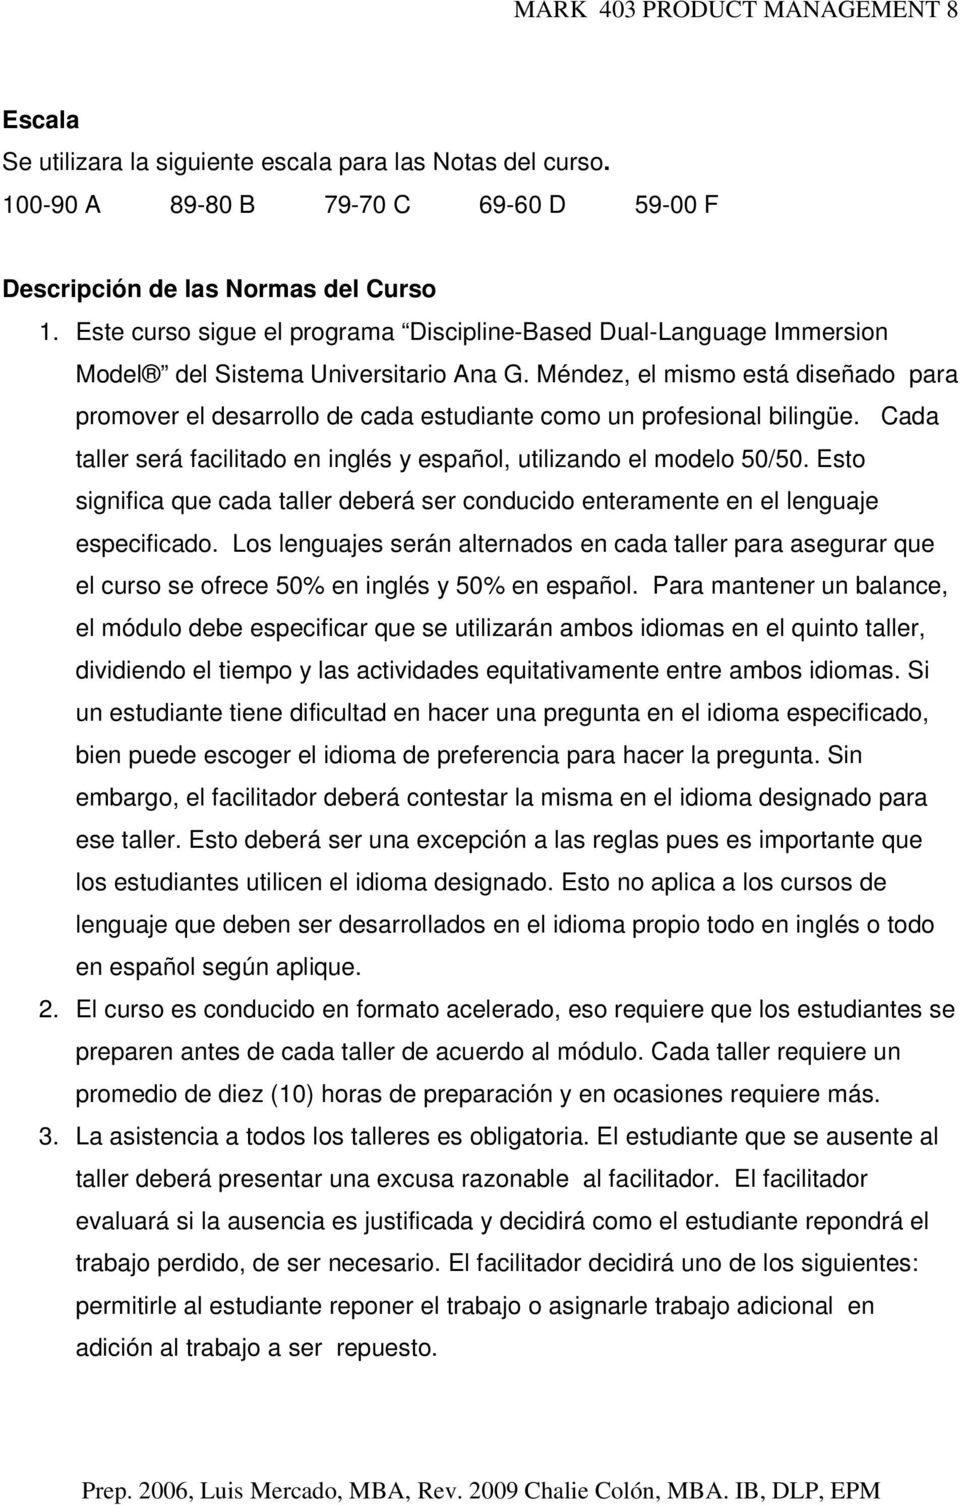 Méndez, el mismo está diseñado para promover el desarrollo de cada estudiante como un profesional bilingüe. Cada taller será facilitado en inglés y español, utilizando el modelo 50/50.